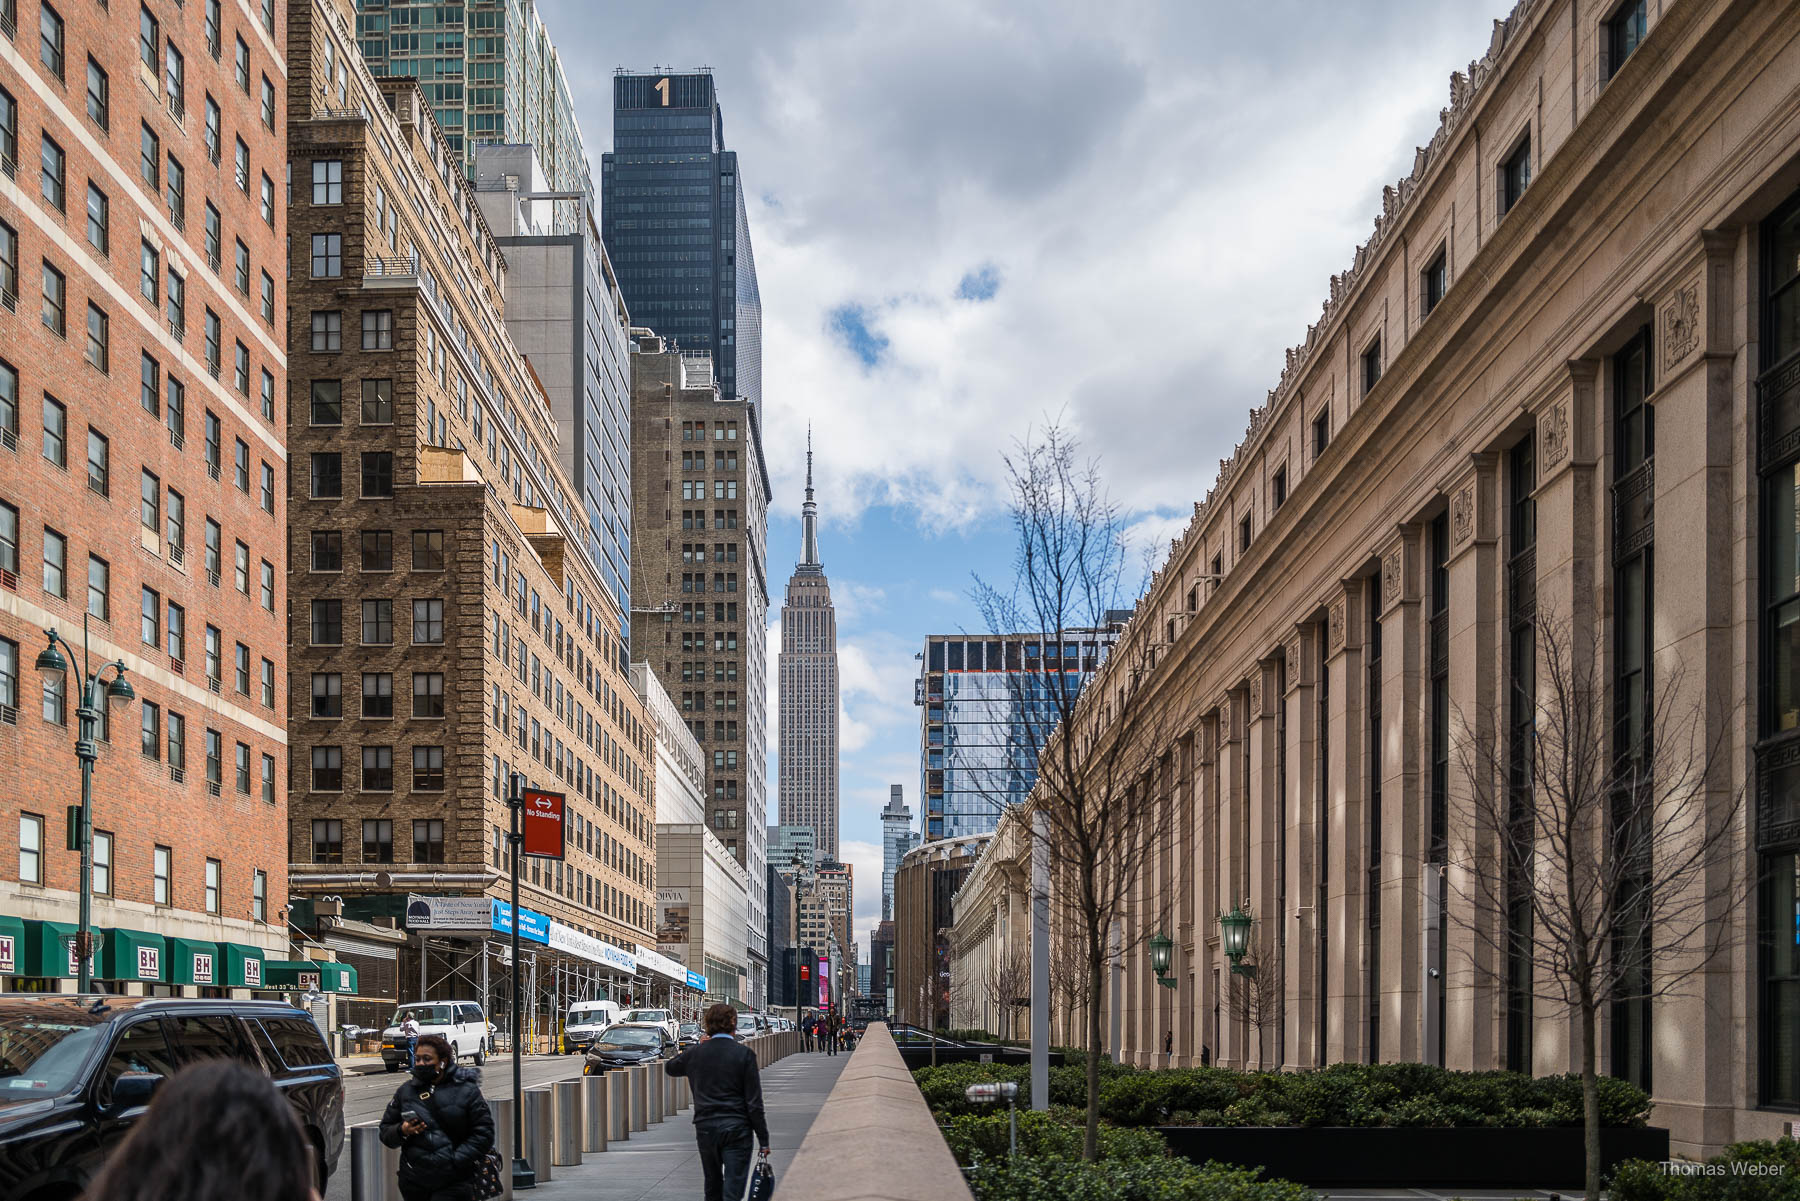 Wolkenkratzer und Straßen in New York City USA, Thomas Weber, Fotograf Oldenburg